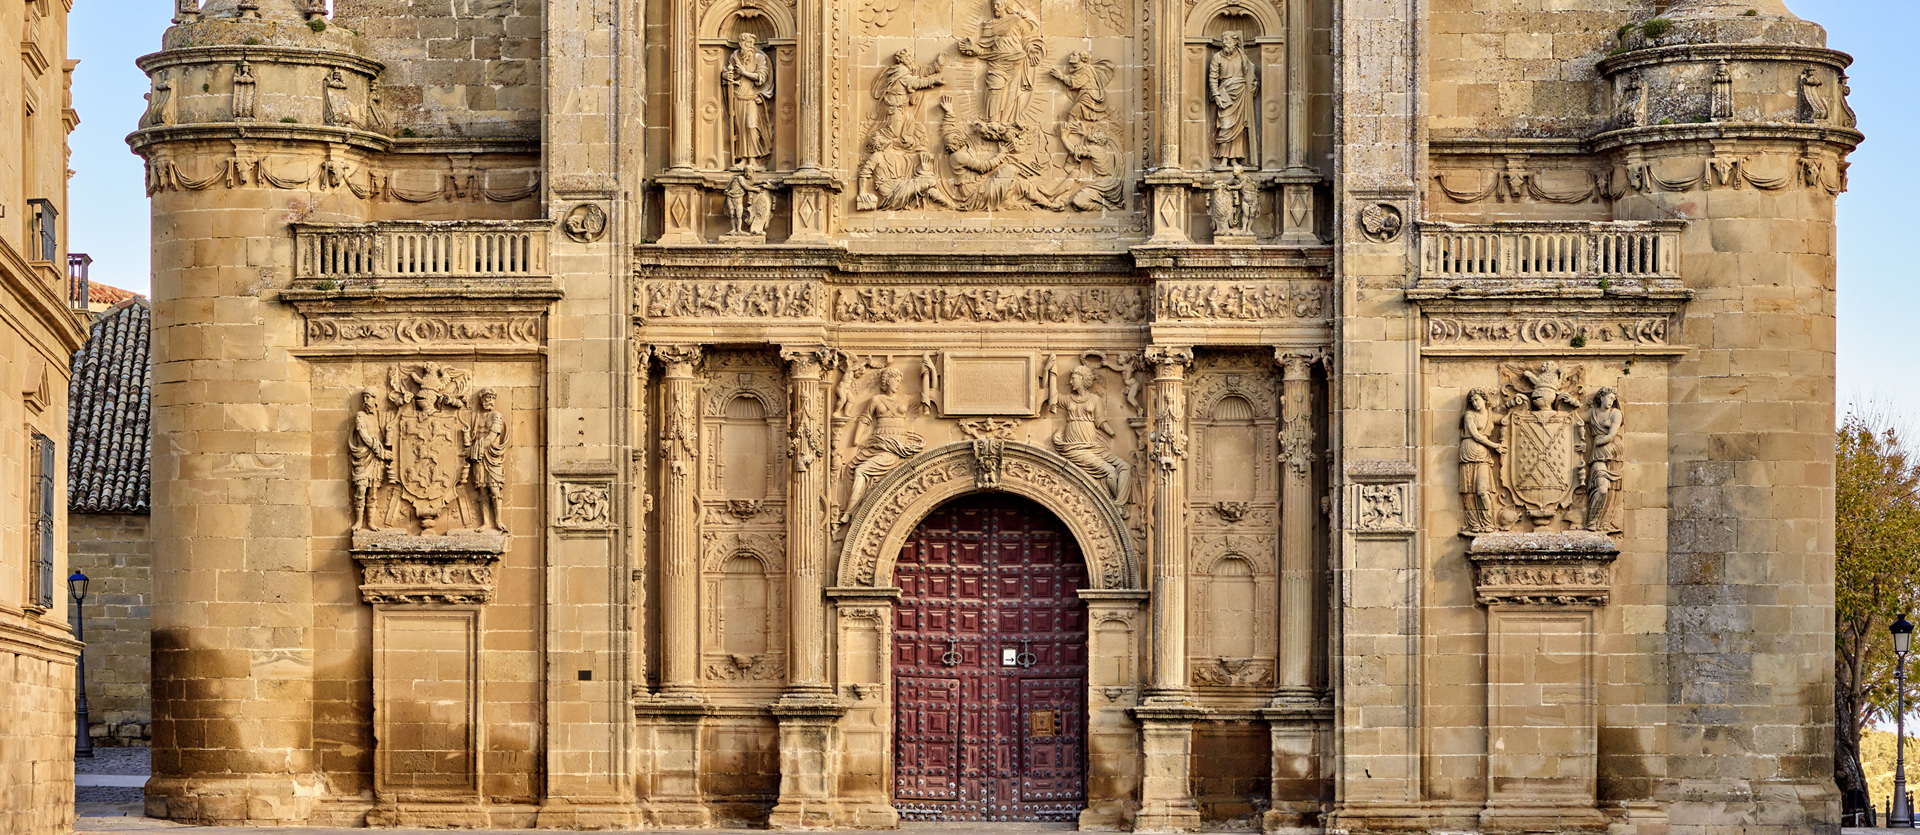 Detalle. Fachada Sacra Capilla el Salvador de Úbeda. Jaén